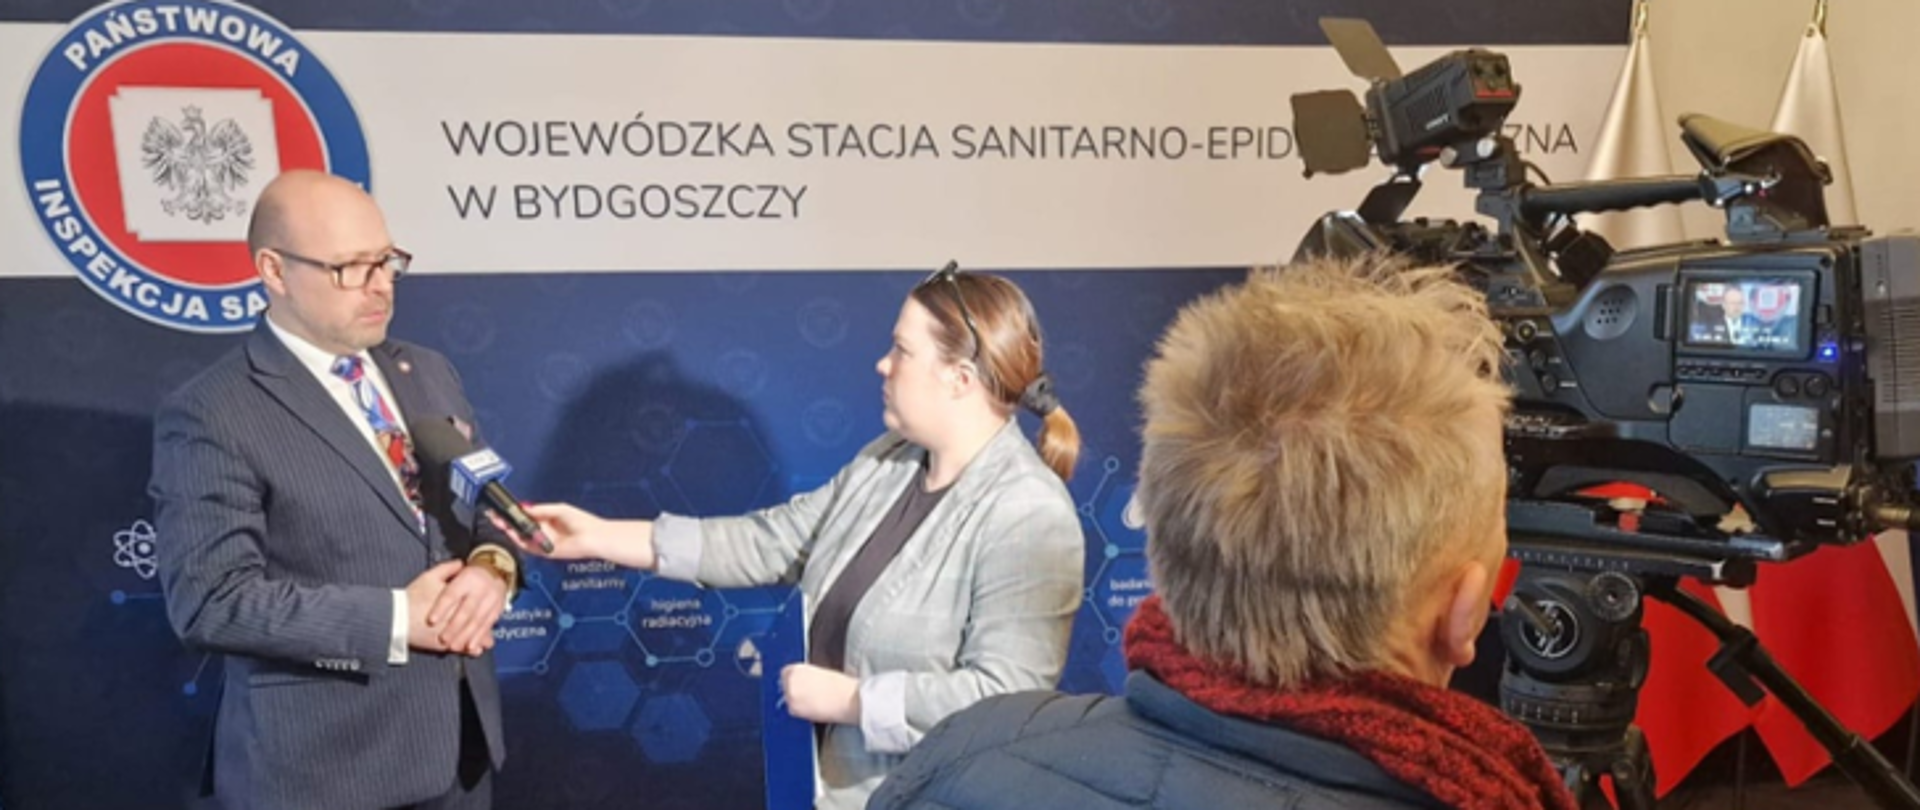 Wystąpienie PWIS w Bydgoszczy dotyczące energetyków